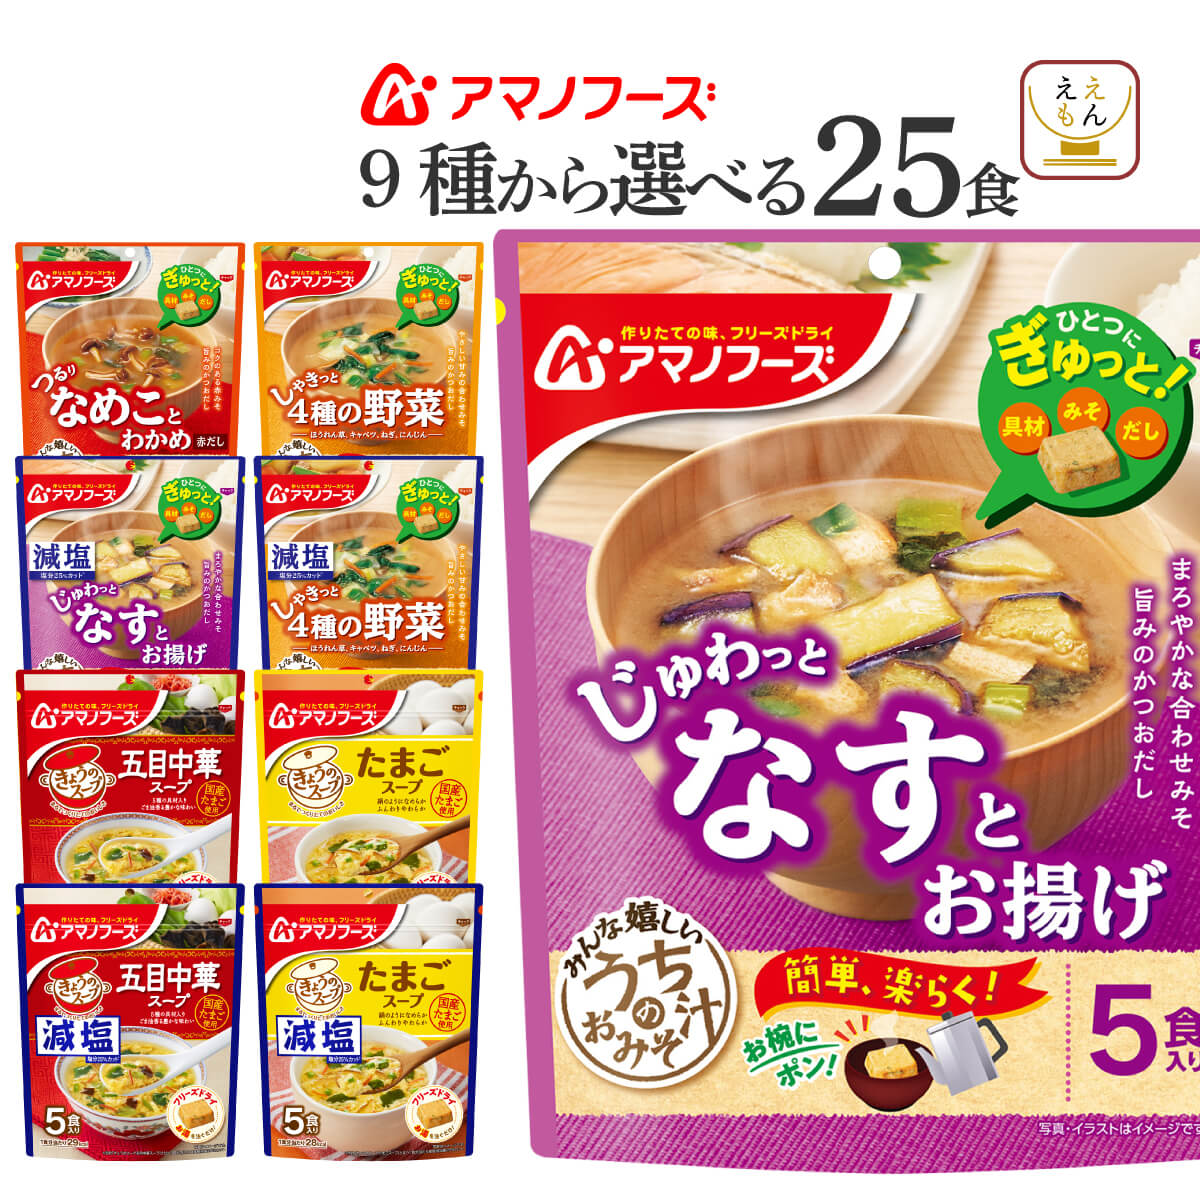 注目のブランド アマノフーズ フリーズドライ 味噌汁 スープ うちのおみそ汁 選べる 25食 セット